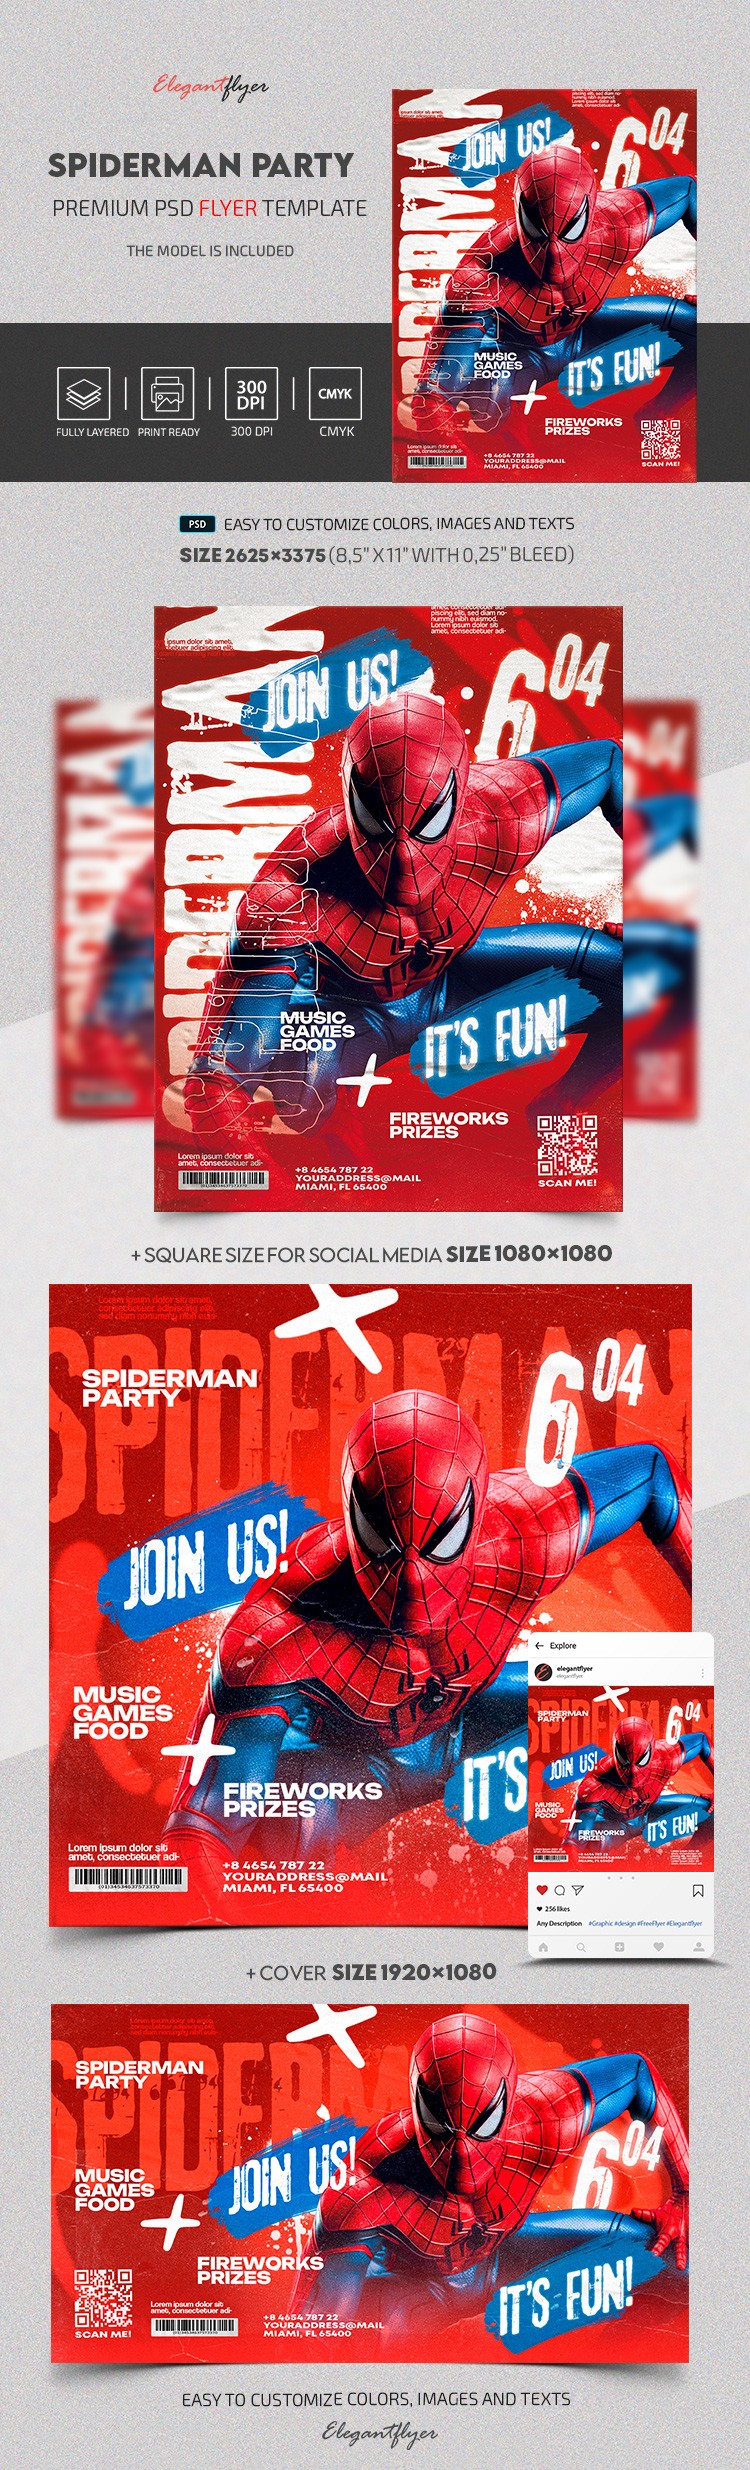 Invitación de Spiderman by ElegantFlyer